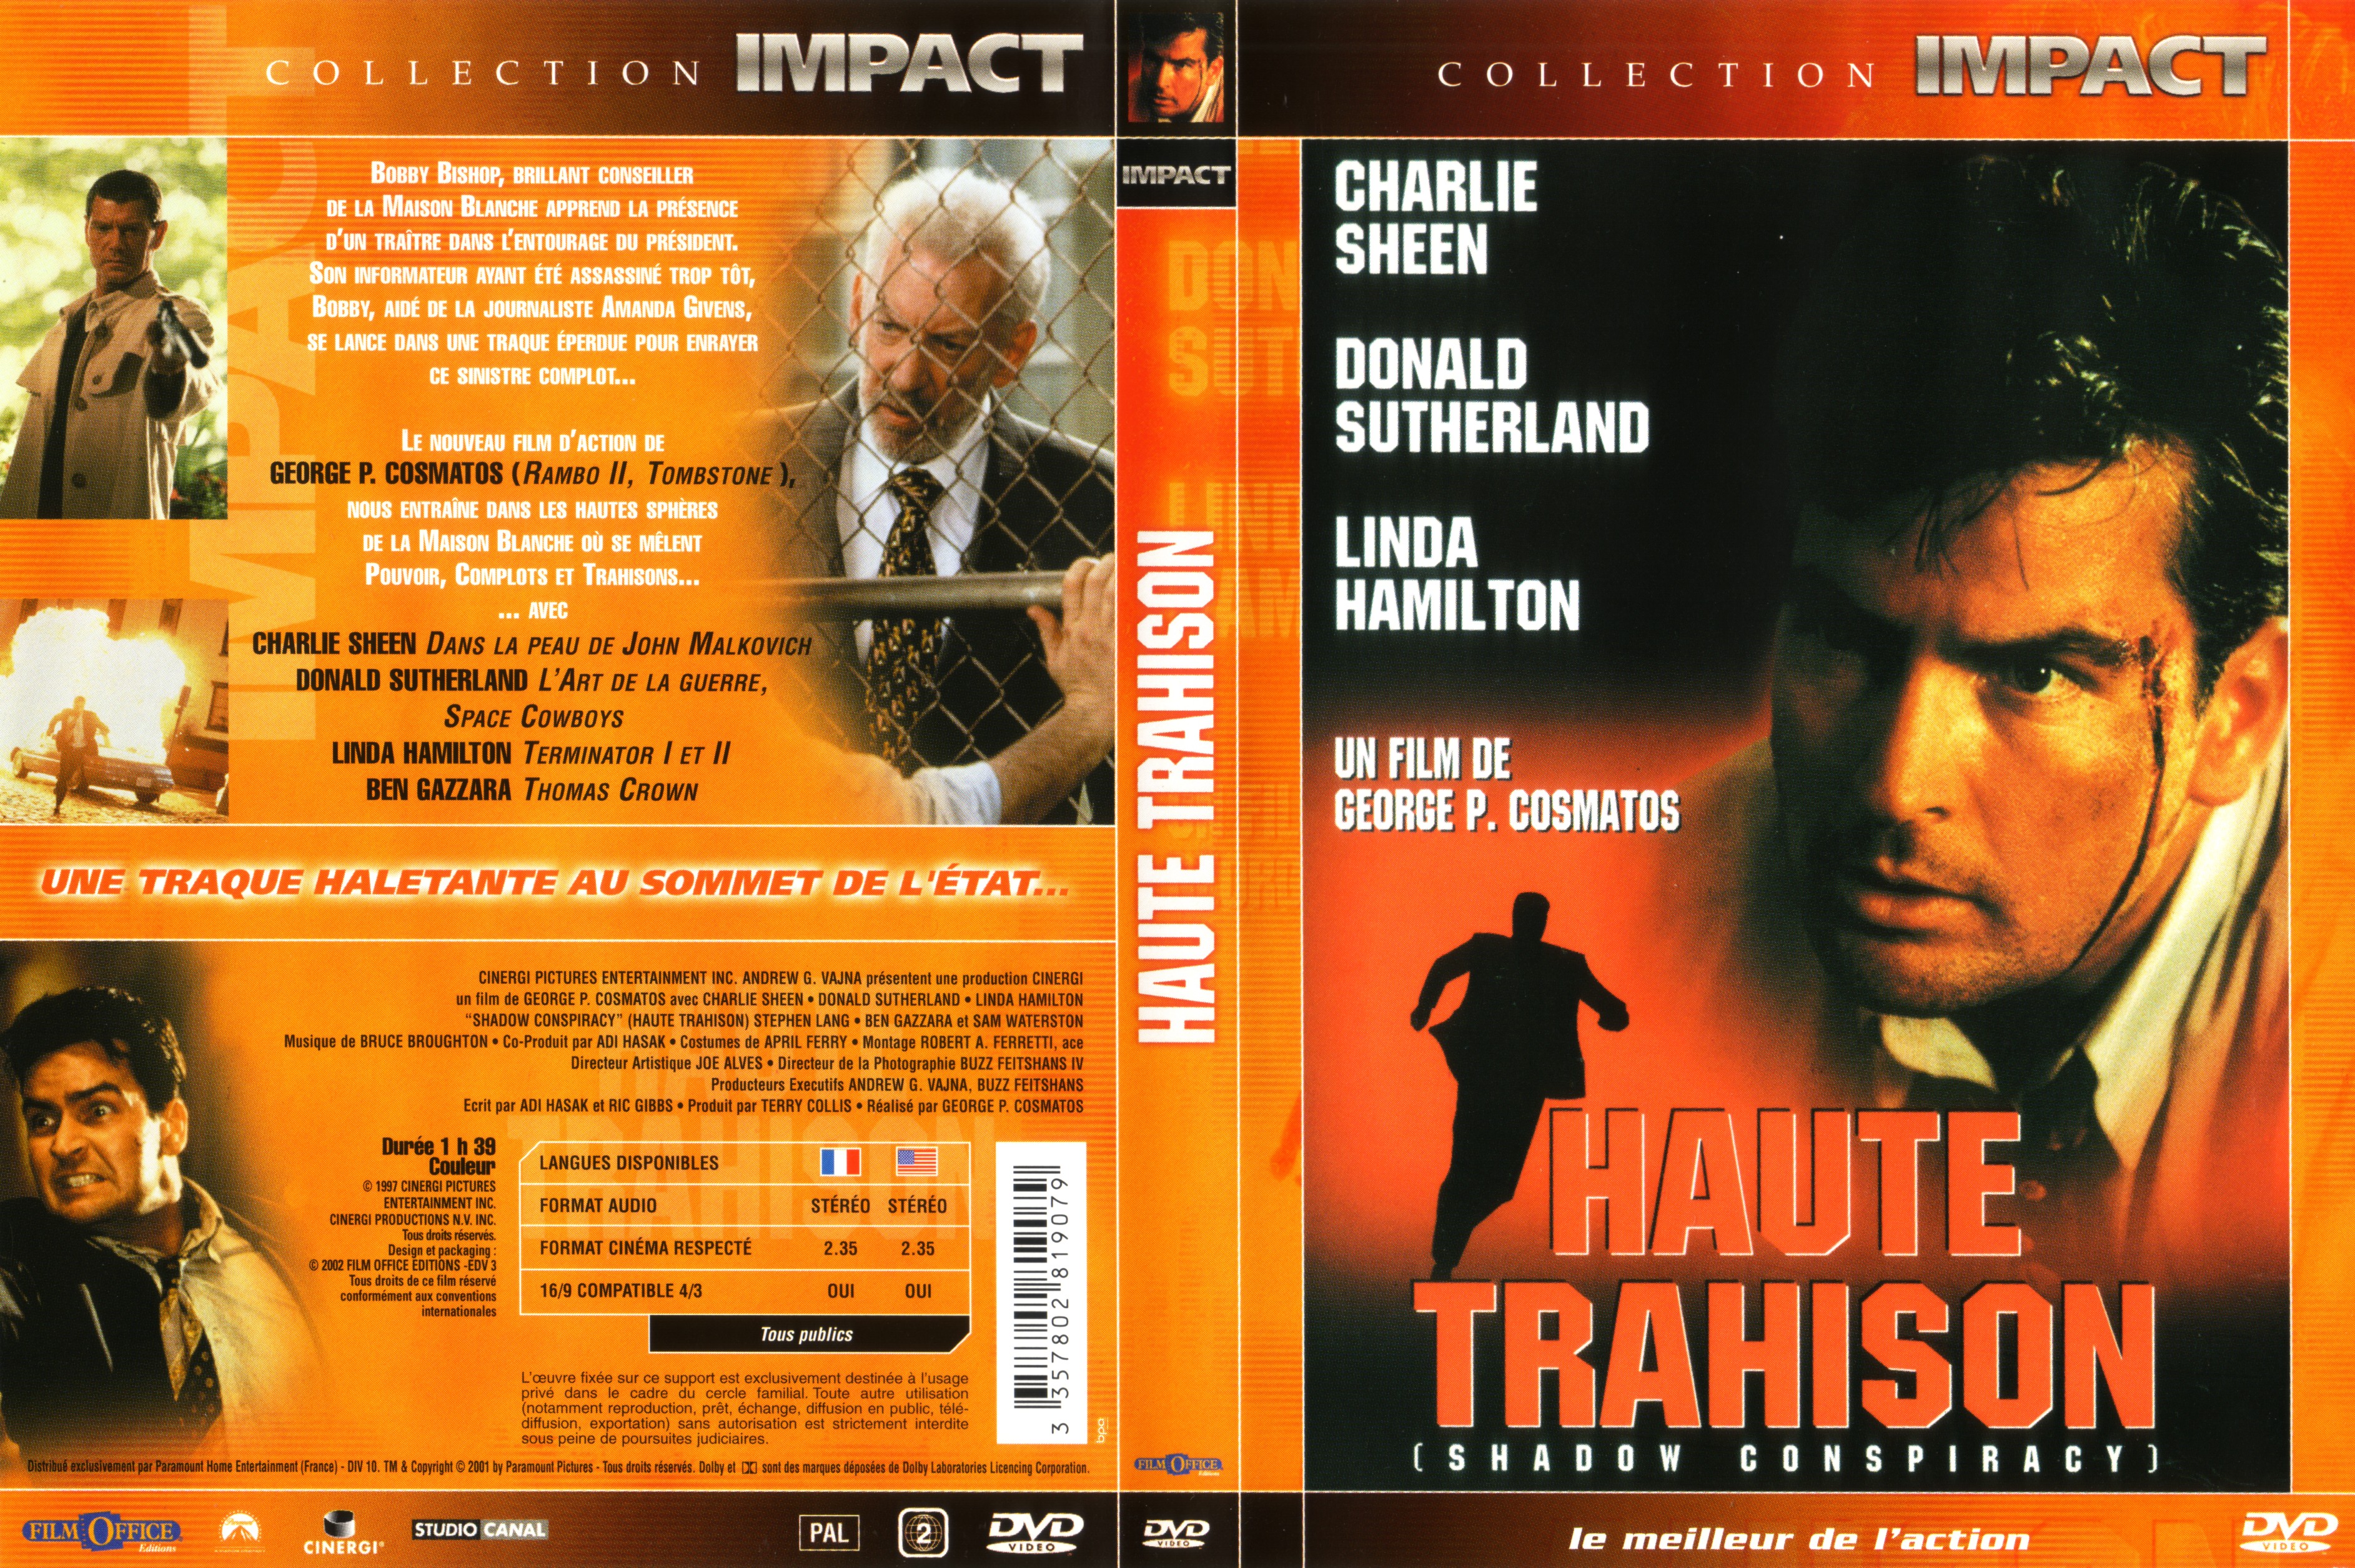 Jaquette DVD Haute trahison v2